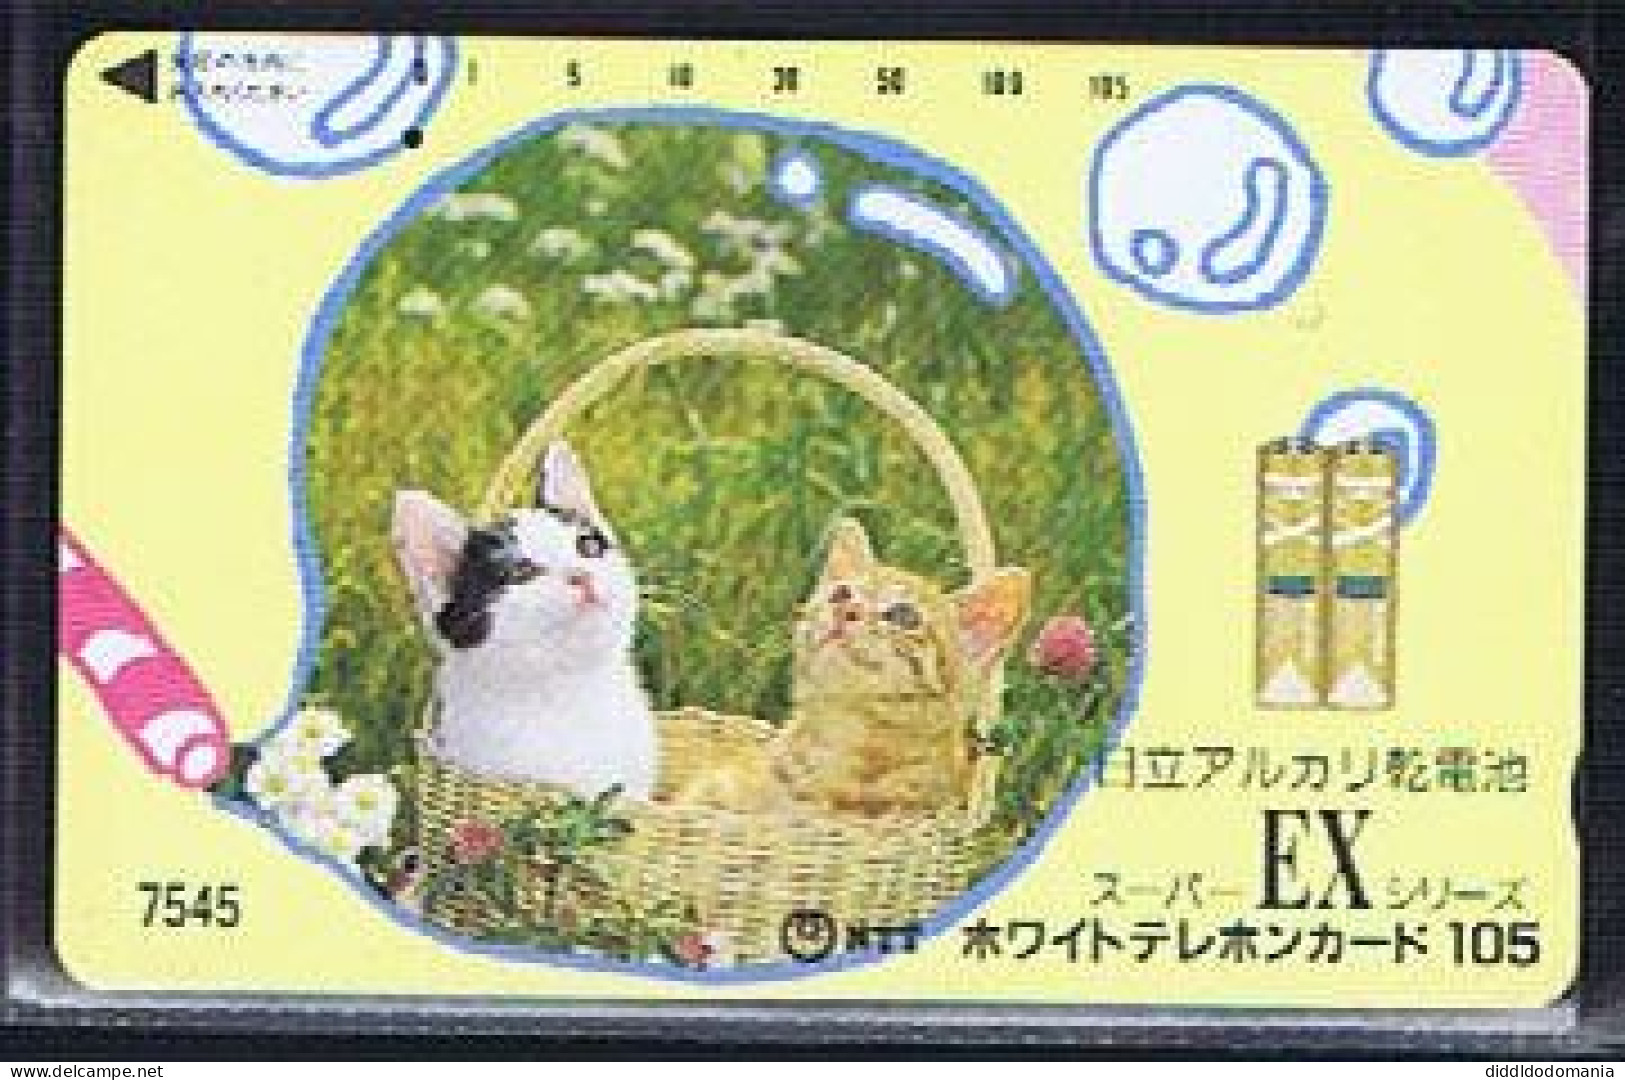 Télécartes Carte Telephonique Phonecard Japon Japan  Telecarte Theme Chat - Gatti